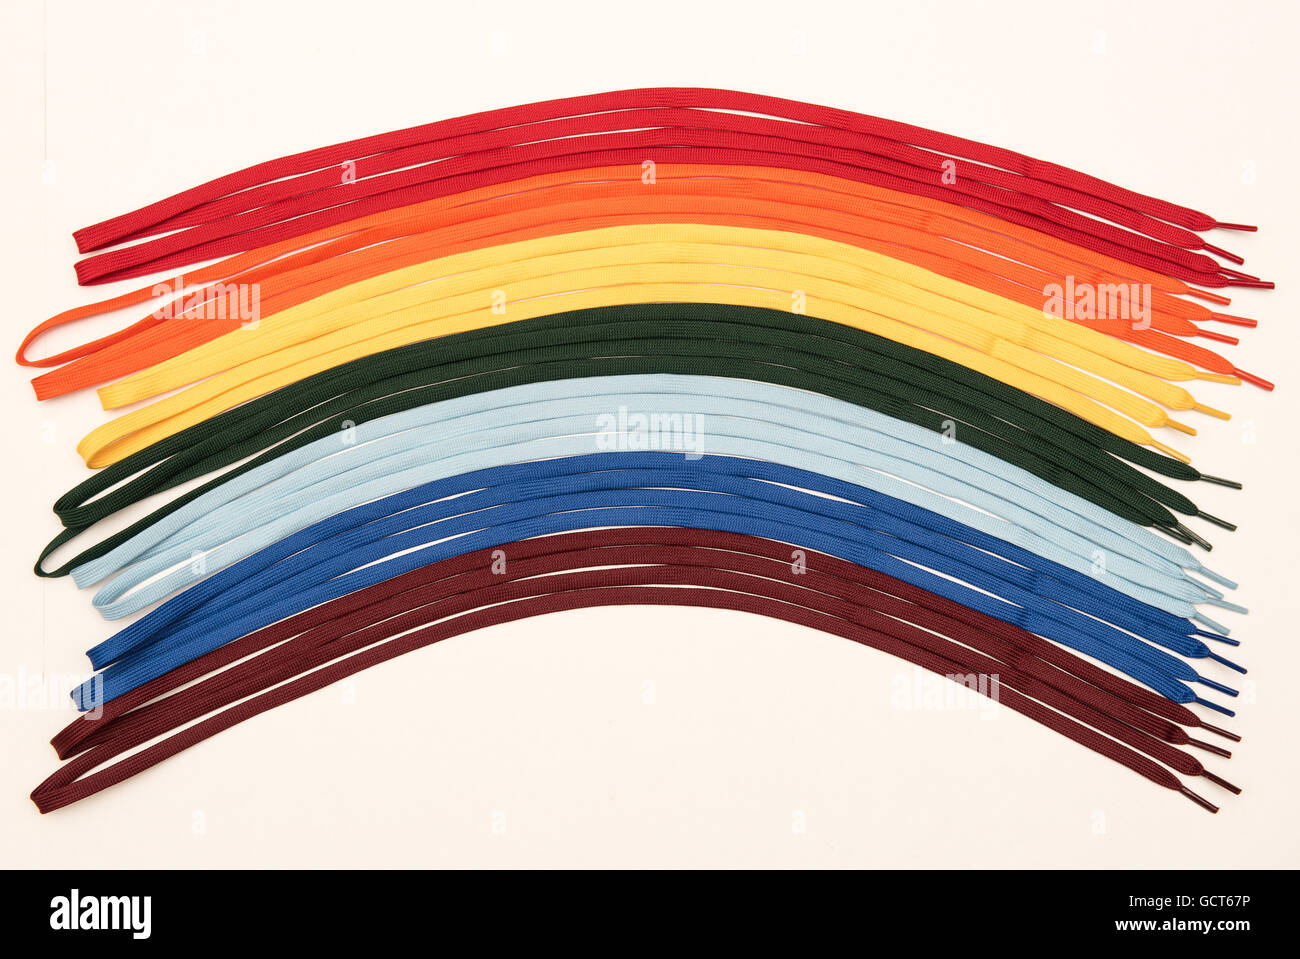 Rainbow lacci colorati su sfondo bianco Foto Stock